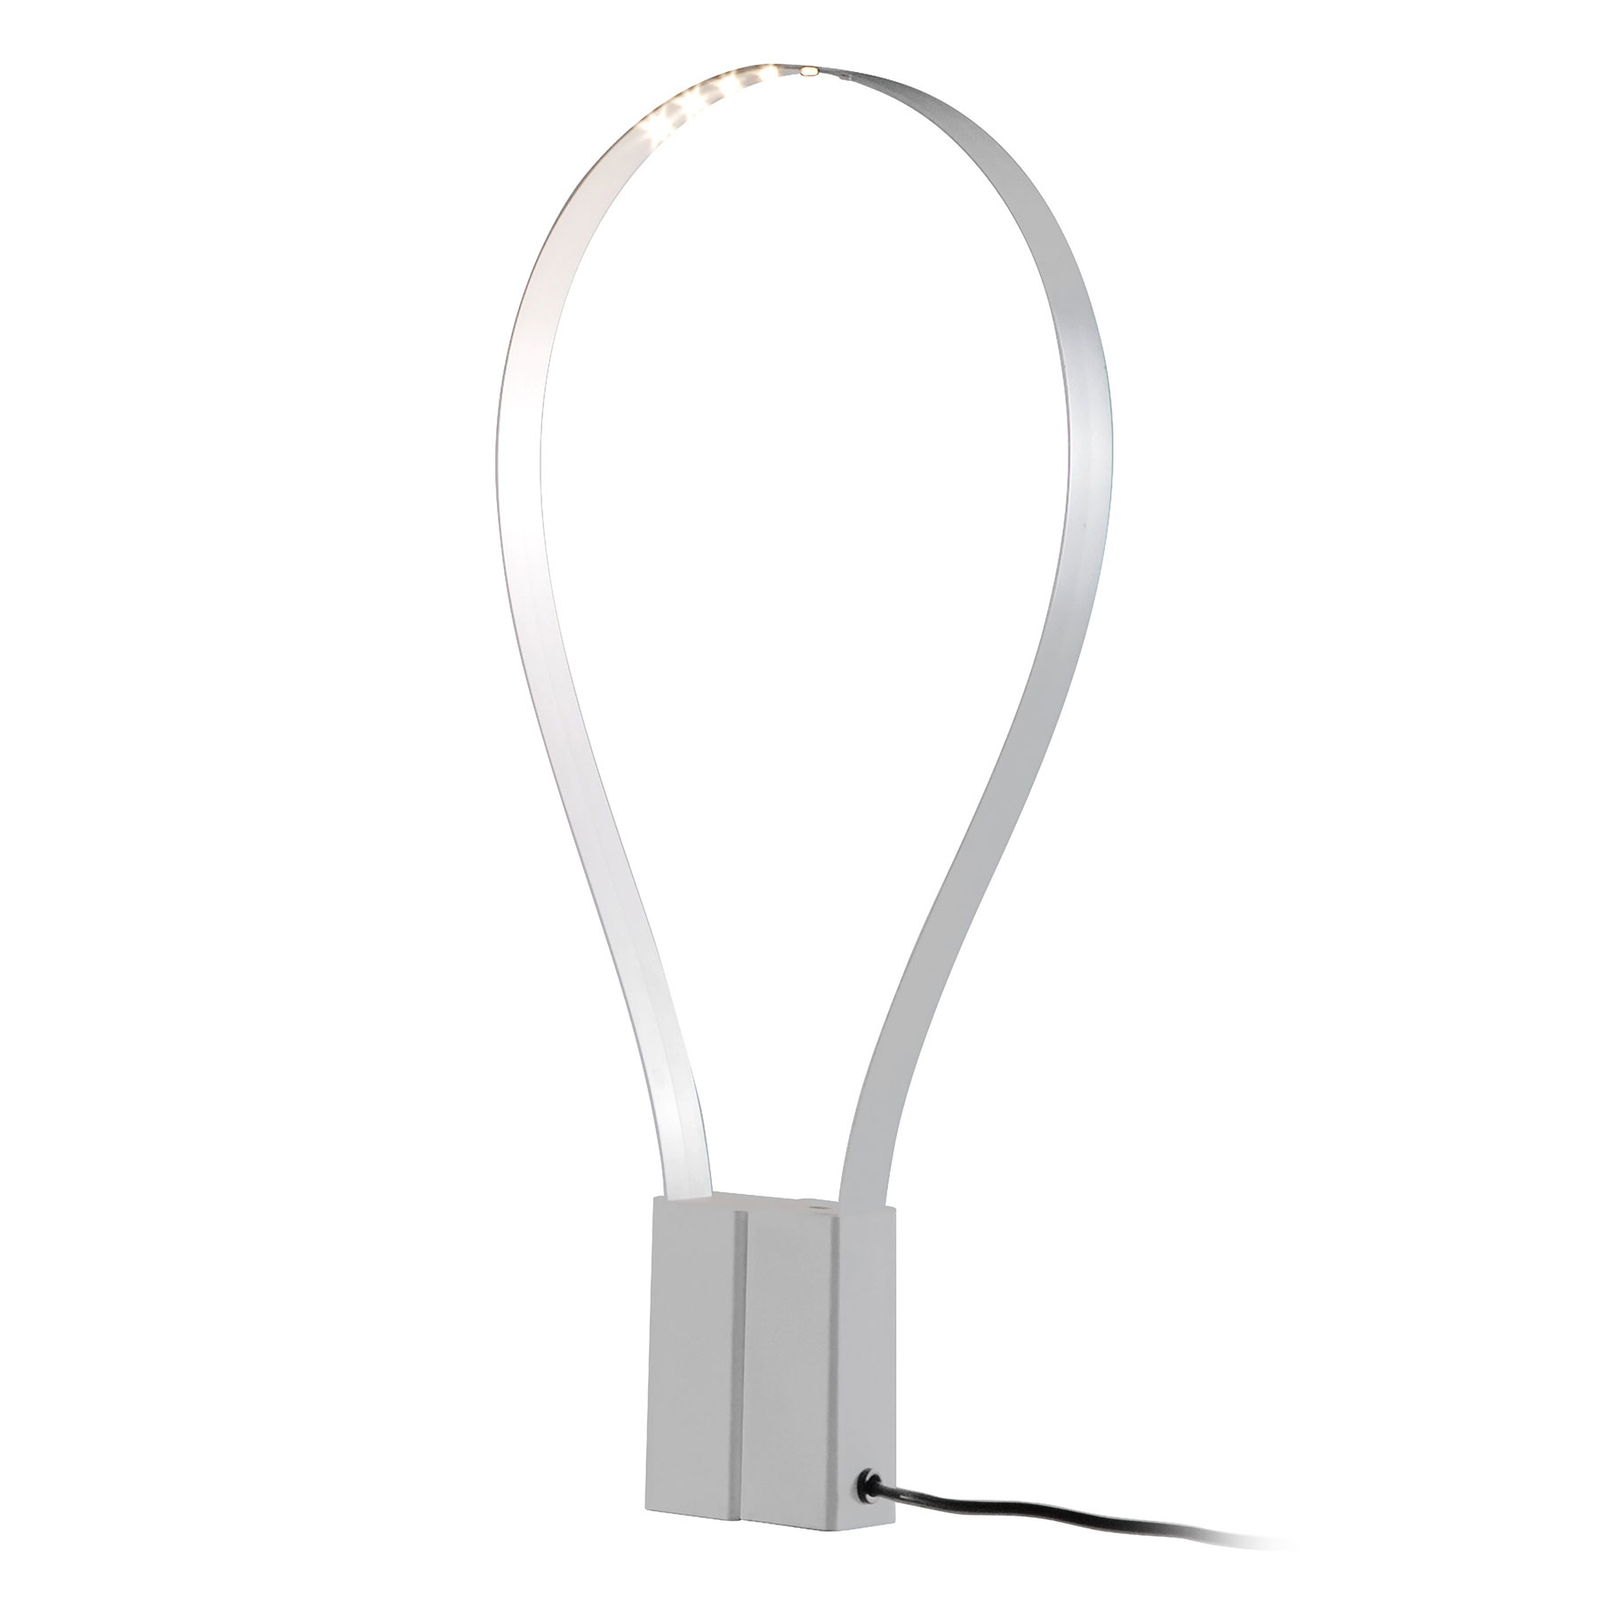 Martinelli Luce Fluida lampa stołowa, elastyczna